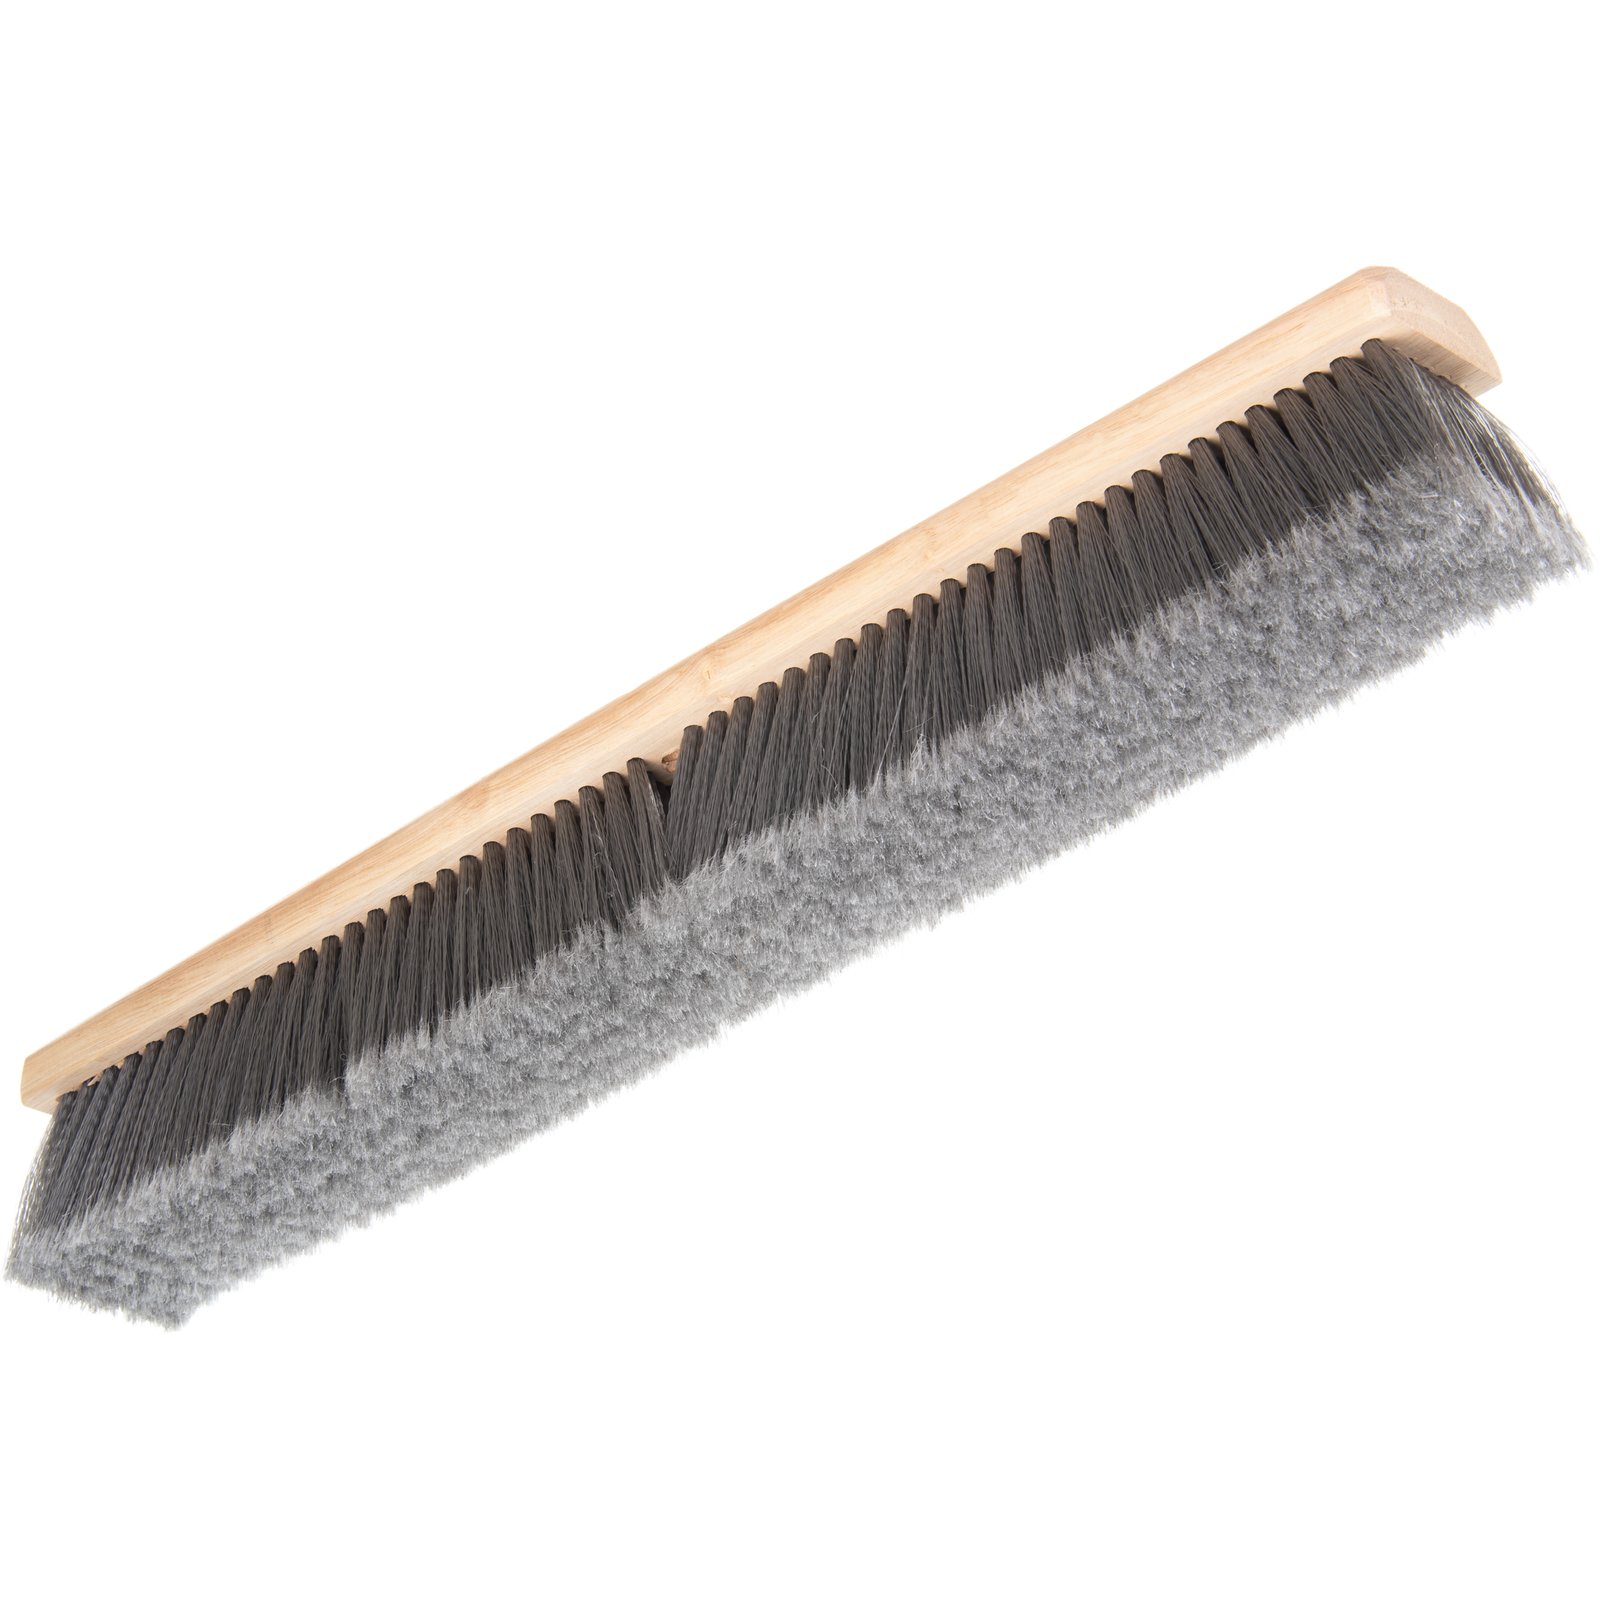 4501423 - Flagged Bristle Hardwood Push Broom Head (Handle Sold